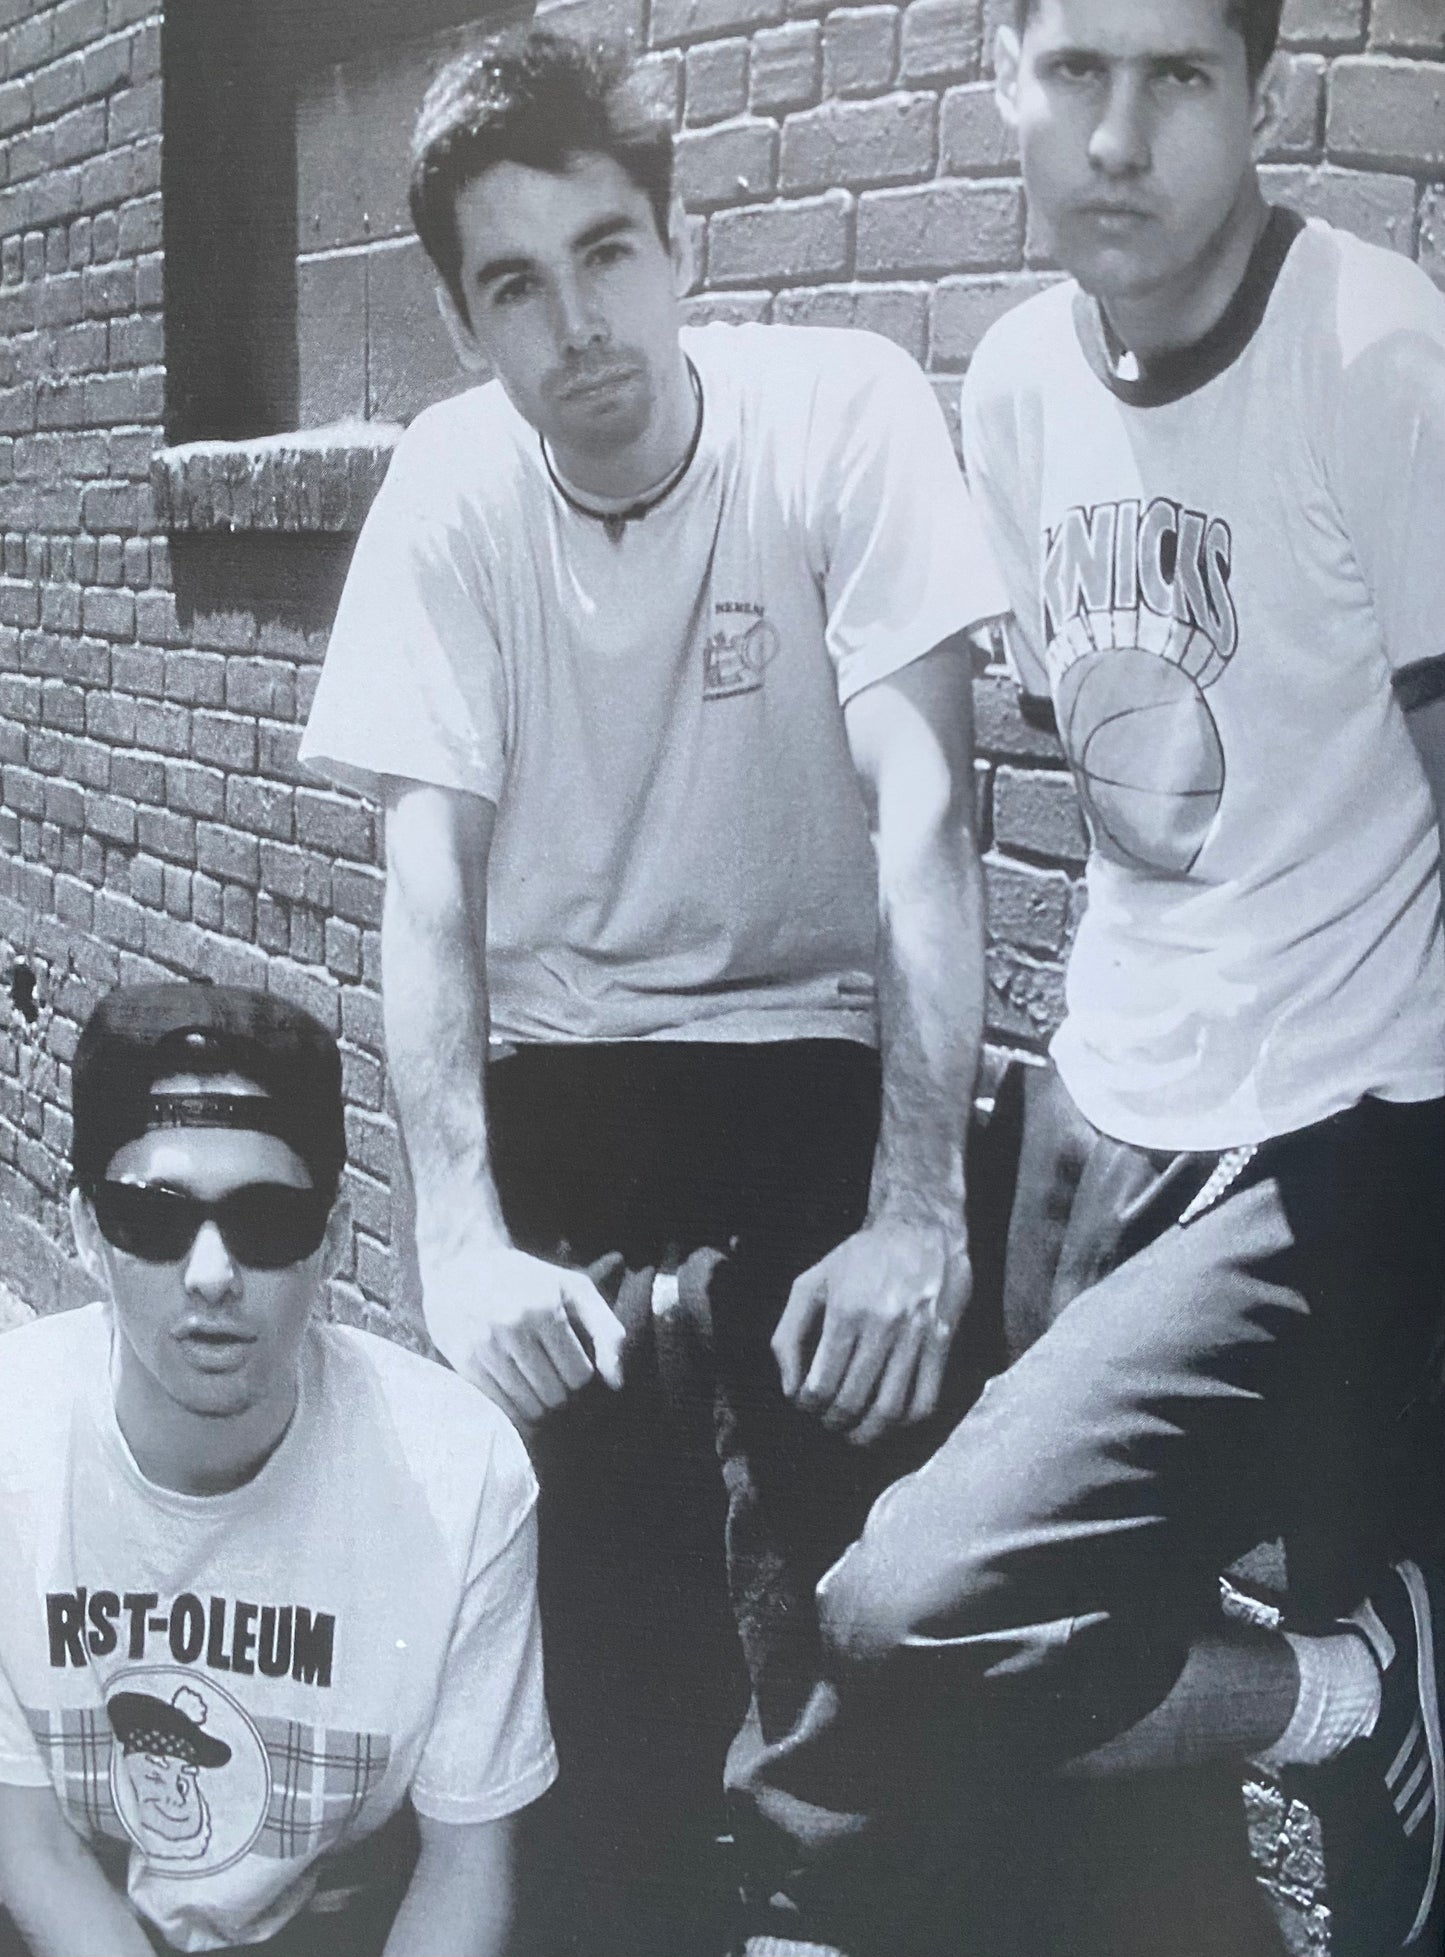 Beastie Boys: In Their Own Words (1999)